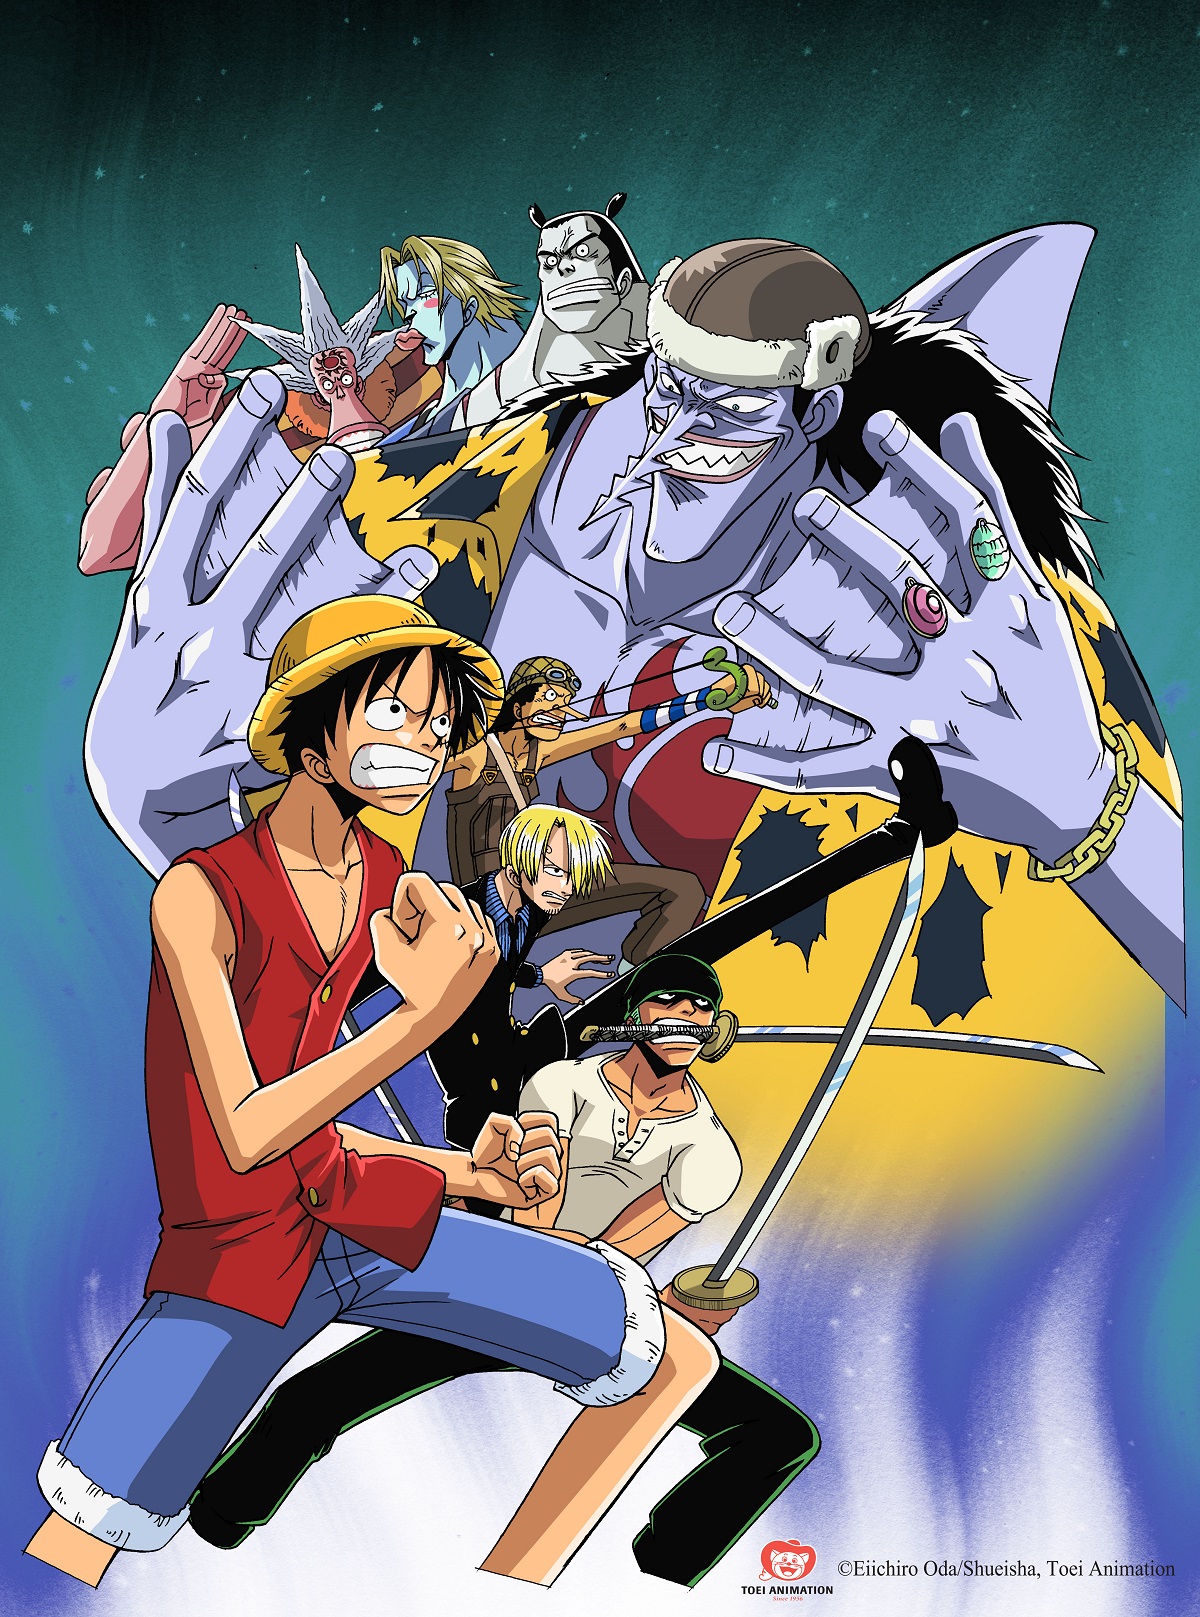 One Piece kể về chuyến hành trình của cậu bé Monkey D. Luffy với biệt danh “Luffy mũ rơm” cùng 8 thành viên khác đi đến các vùng biển khác nhau để tìm kiếm kho báu vĩ đại nhất thế giới và trở thành Tân Hải Tặc Vương.